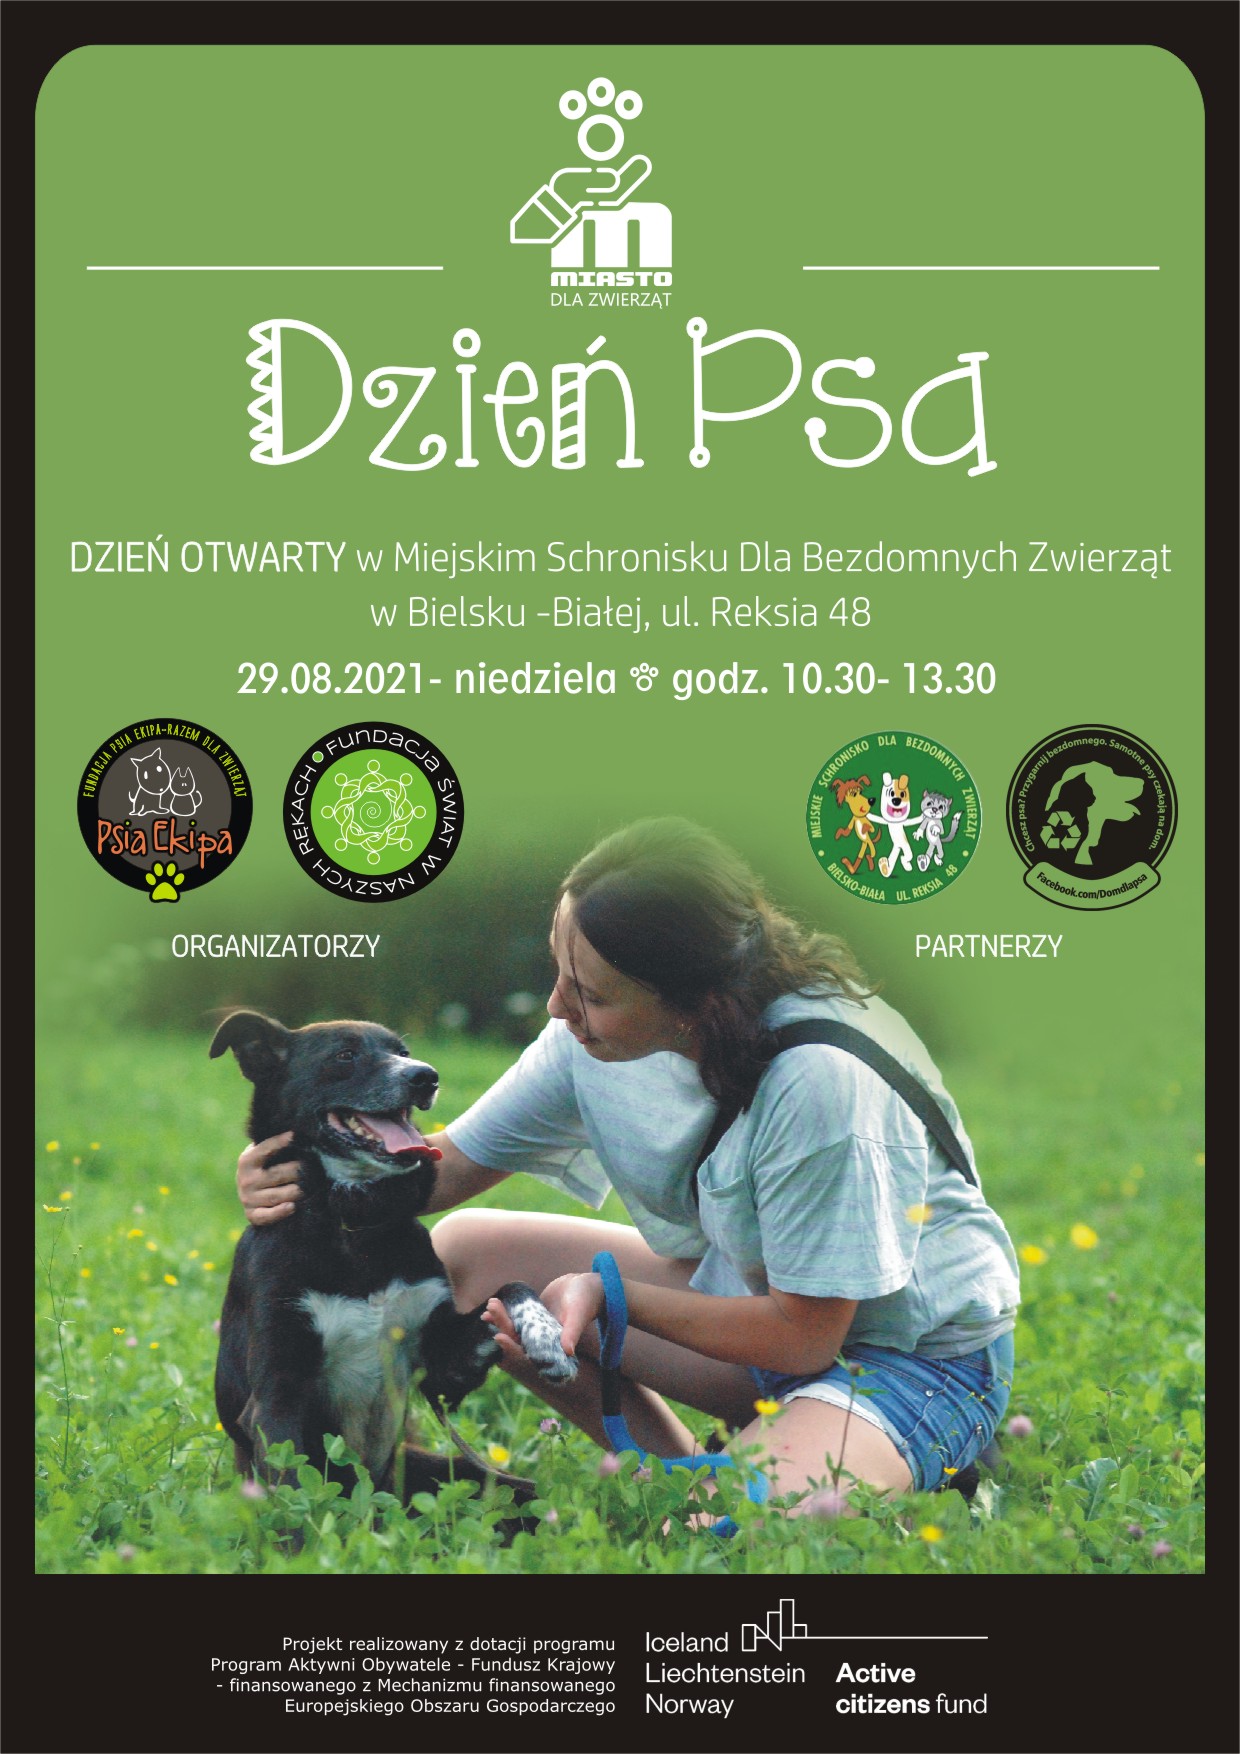  Dzień Psa - dzień otwarty w schronisku Reksio Na zdjęciu plakat Dnia psa